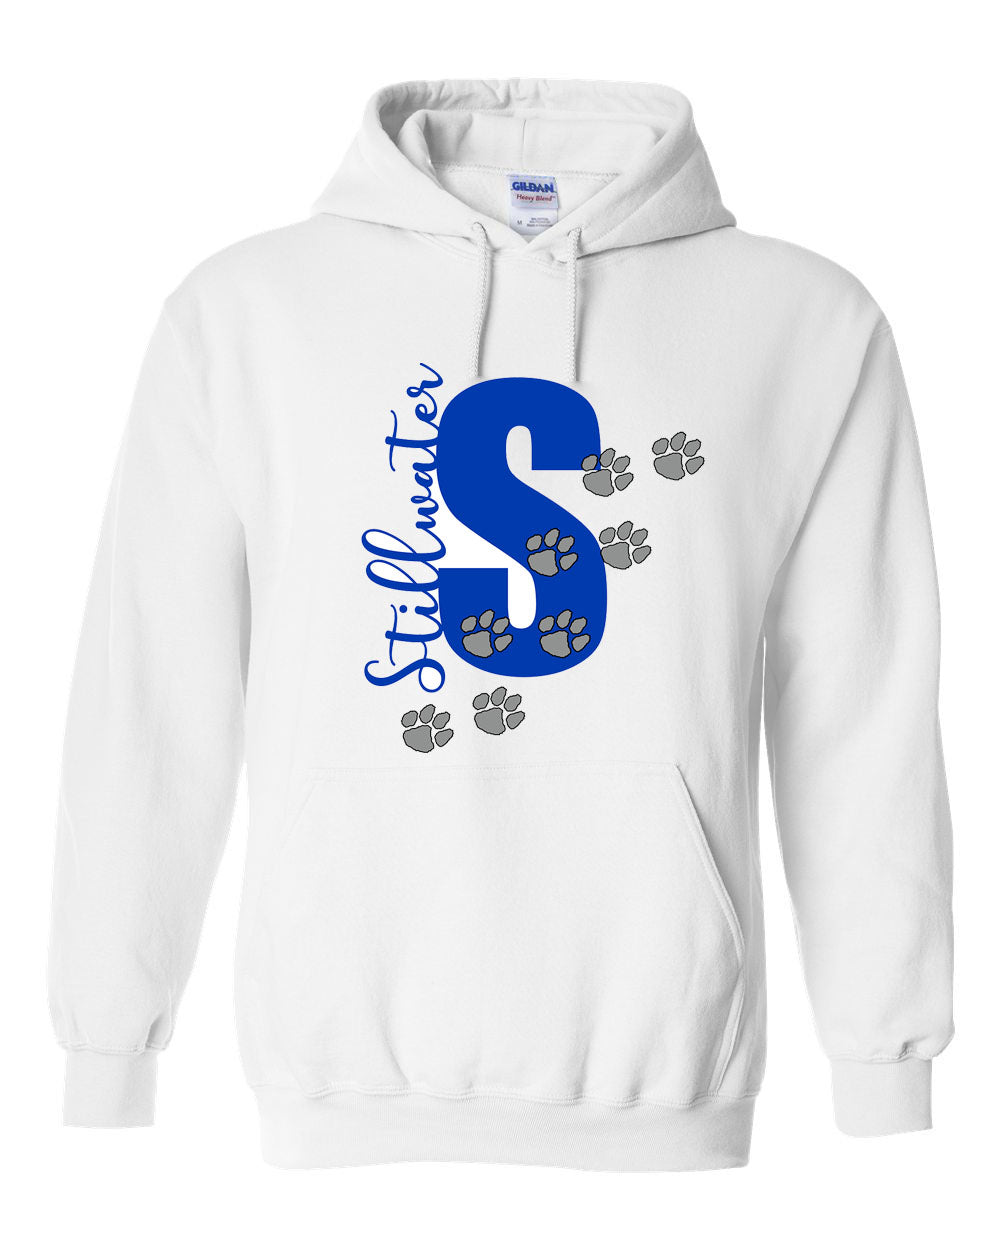 Stillwater Design 6 Hooded Sweatshirt